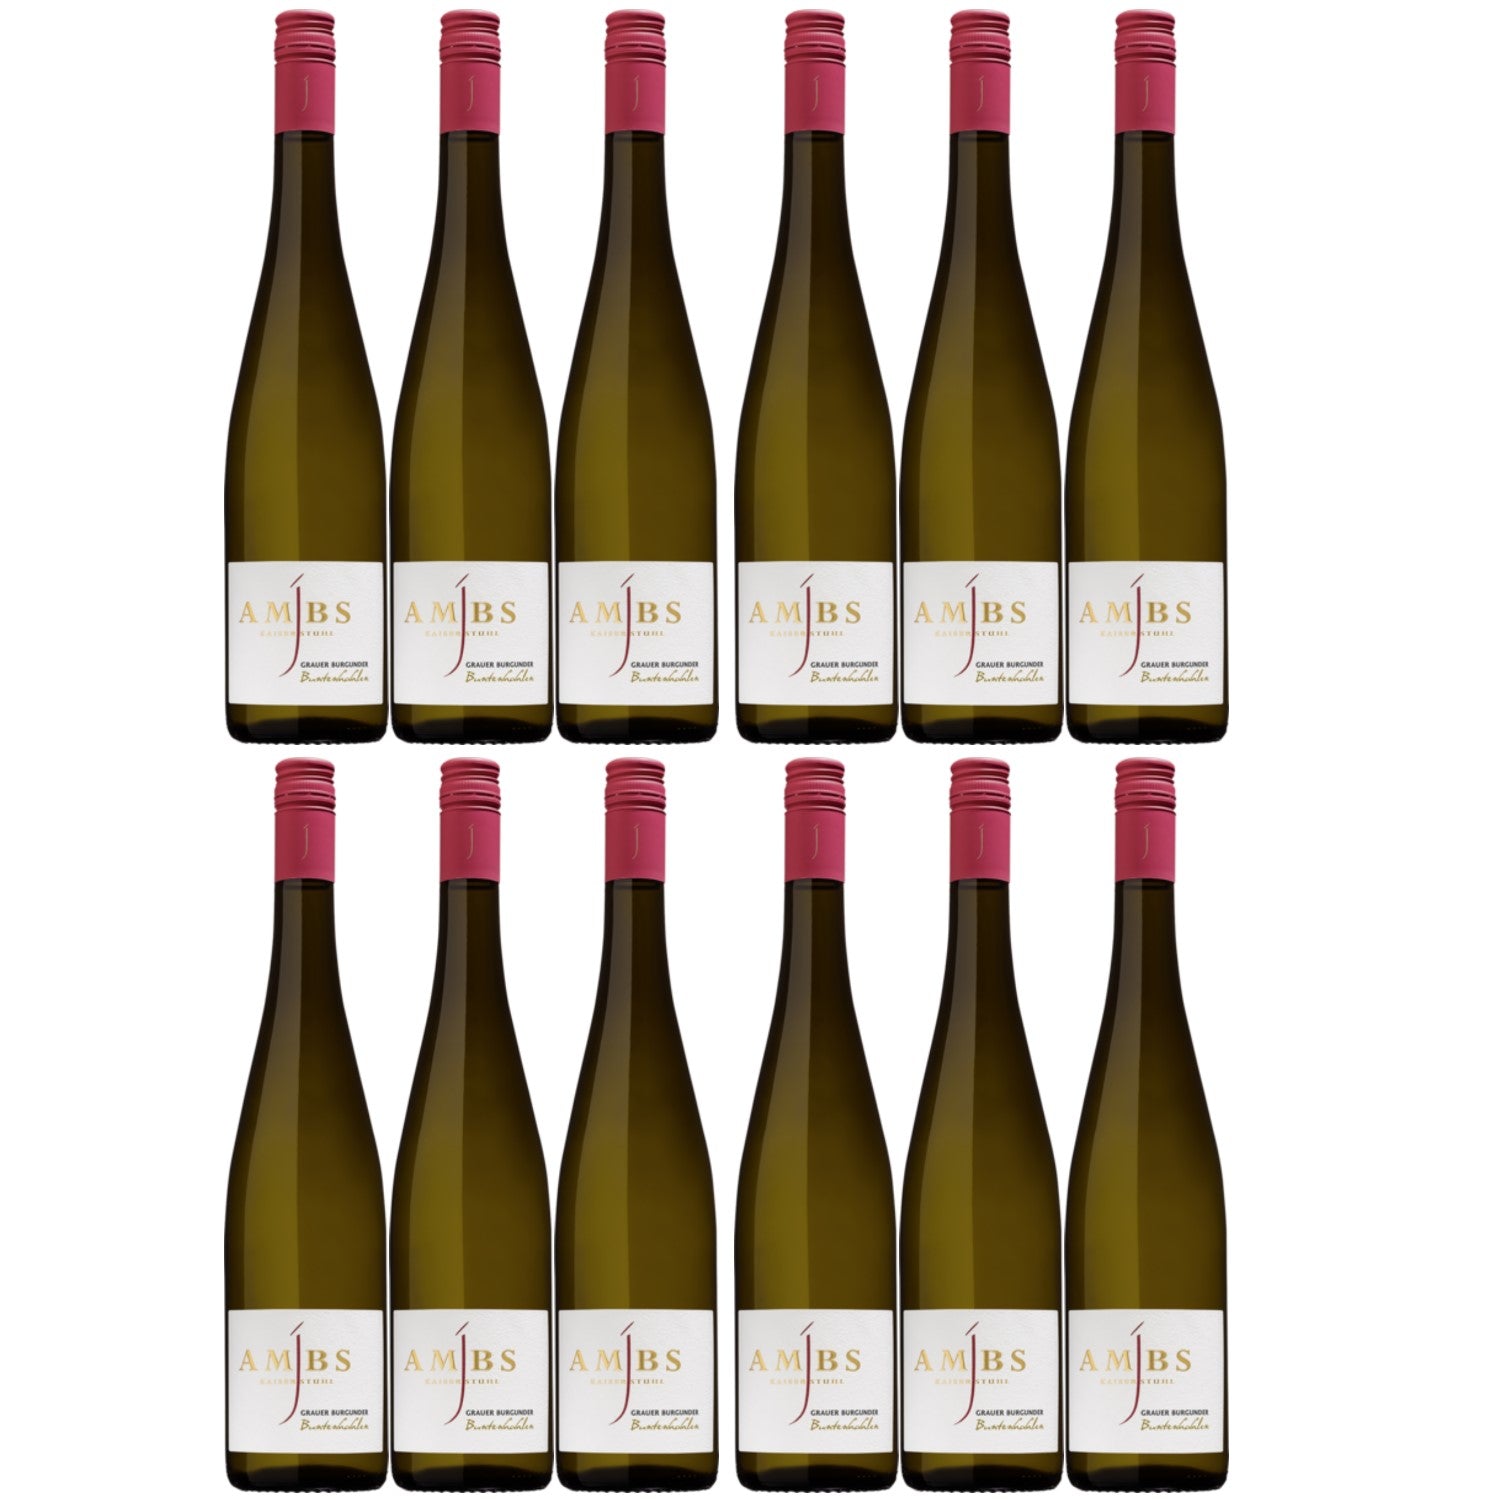 Josef Ambs Grauer Burgunder Buntenhahlen Weißwein deutscher Wein trocken Deutschland (12 x 0.75l) - Versanel -